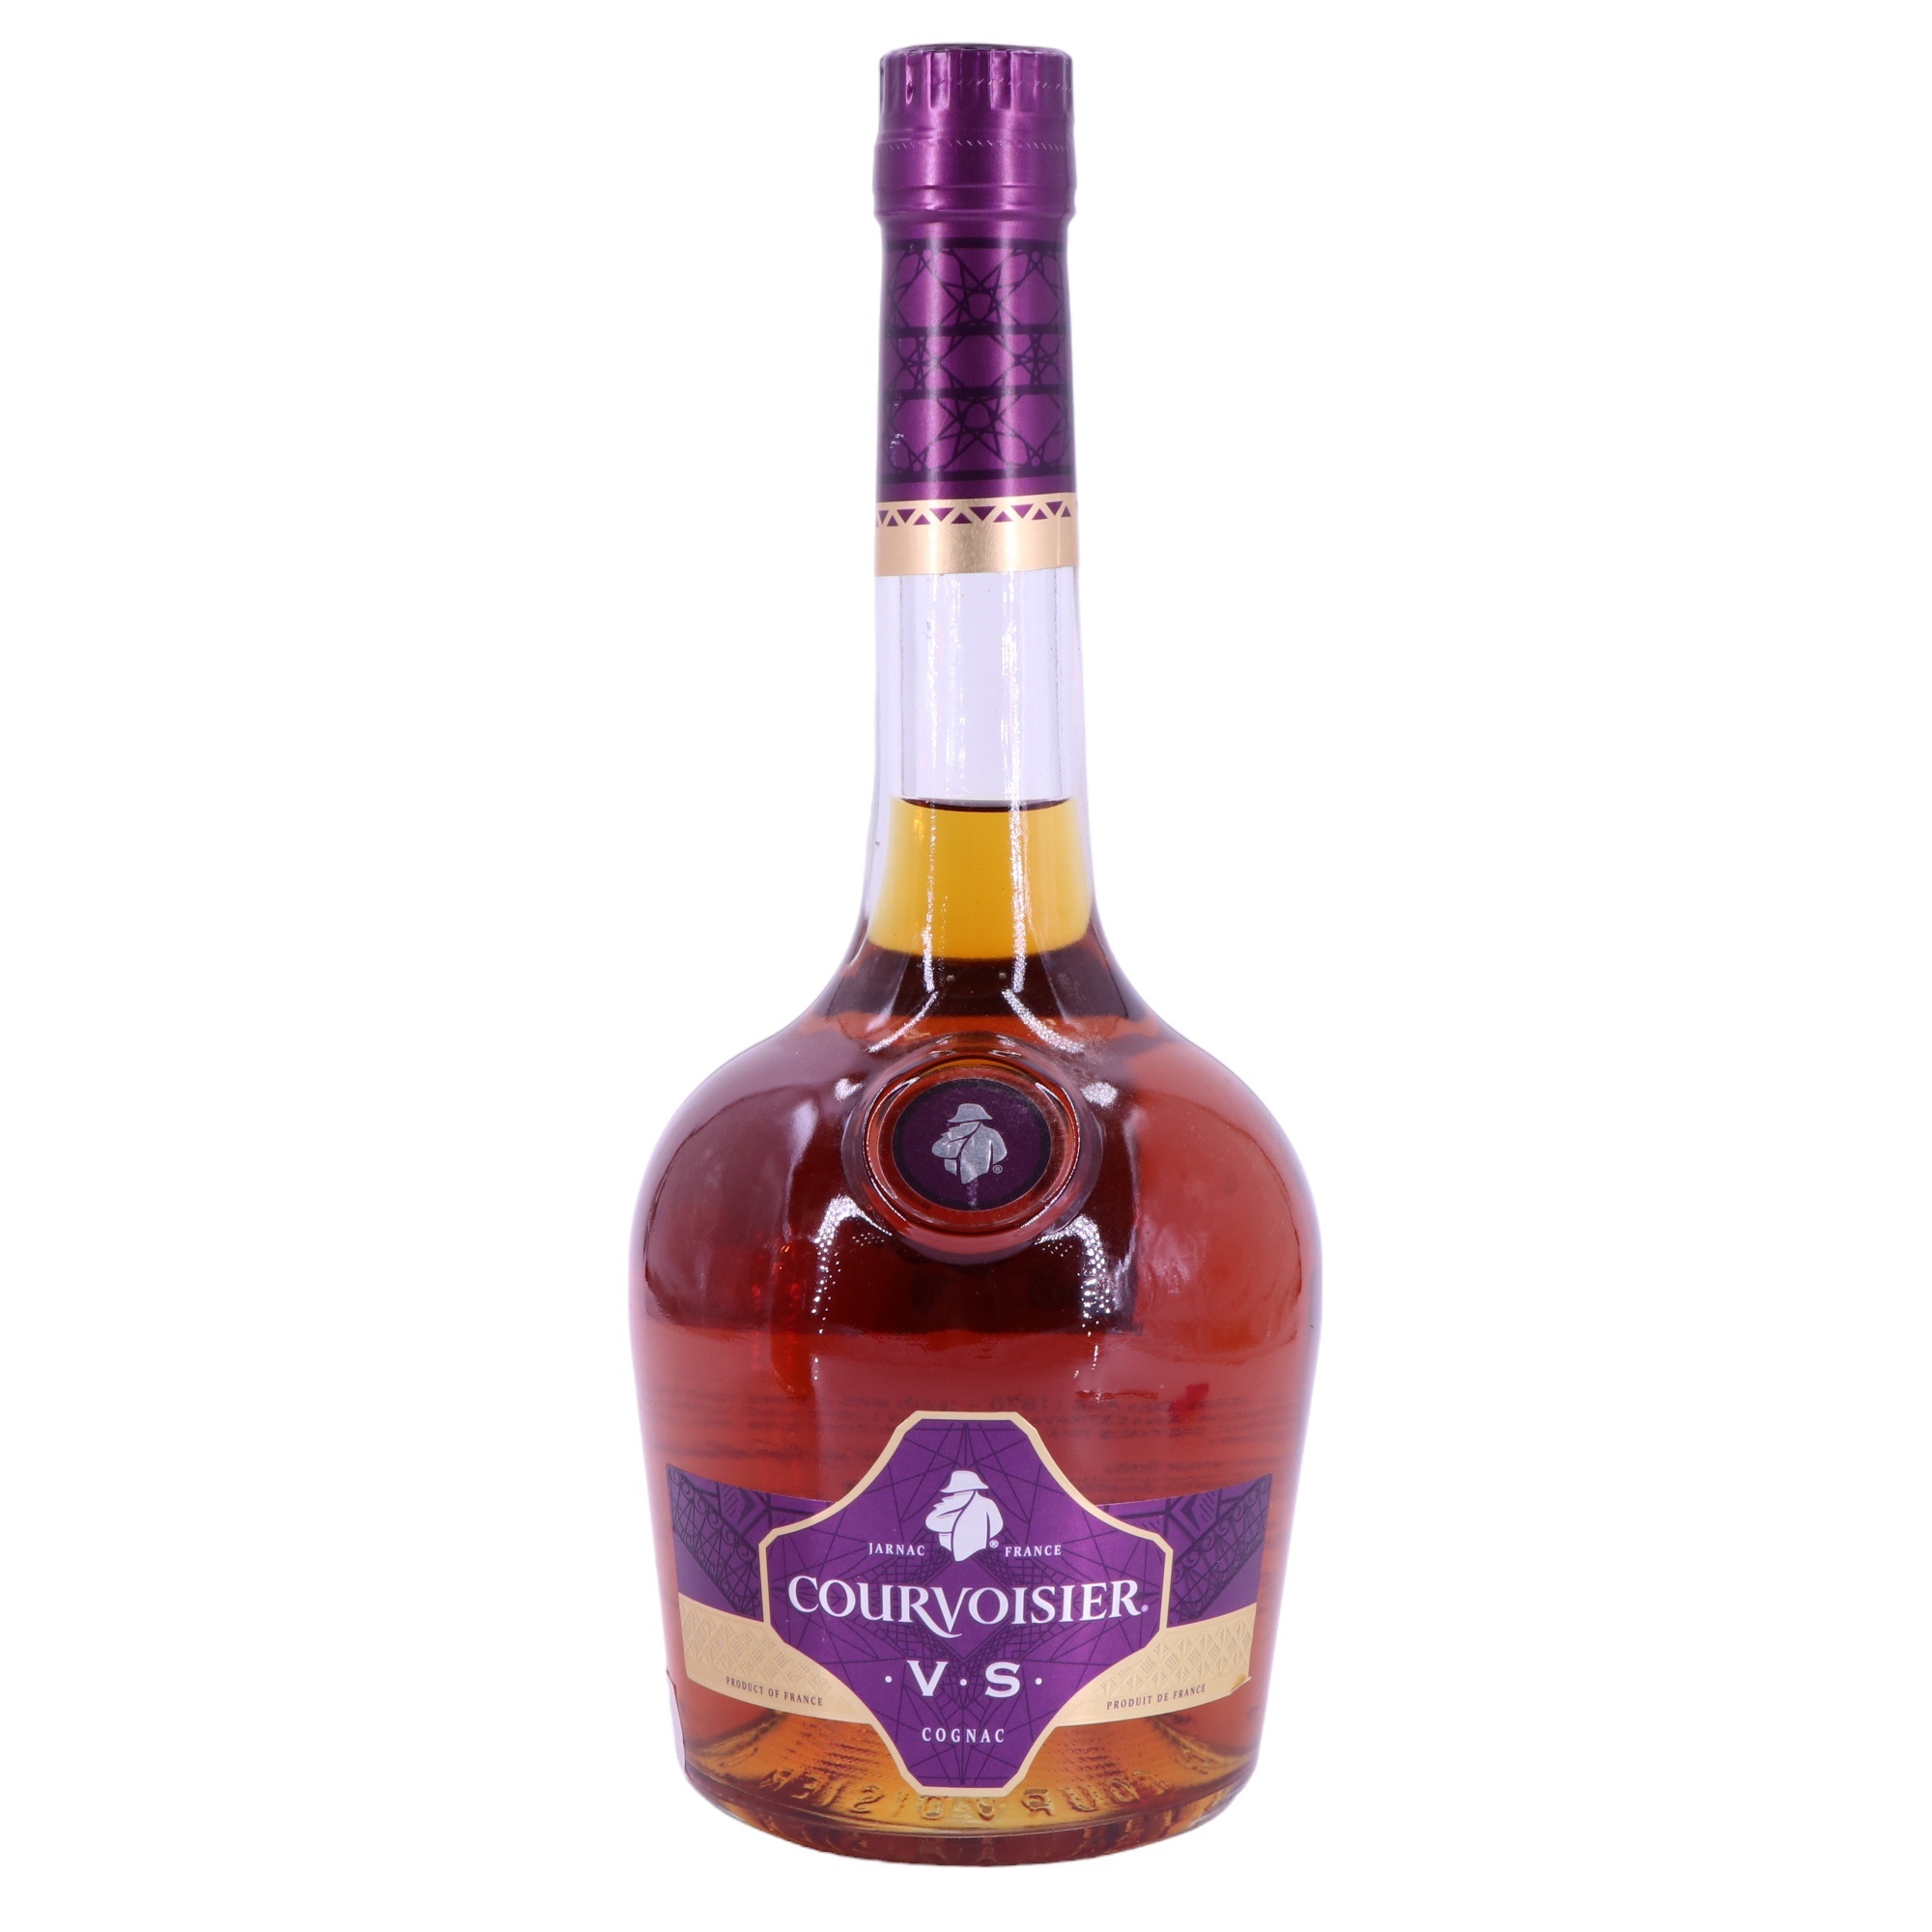 A bottle of Courvoisier VS Cognac, 70 cl